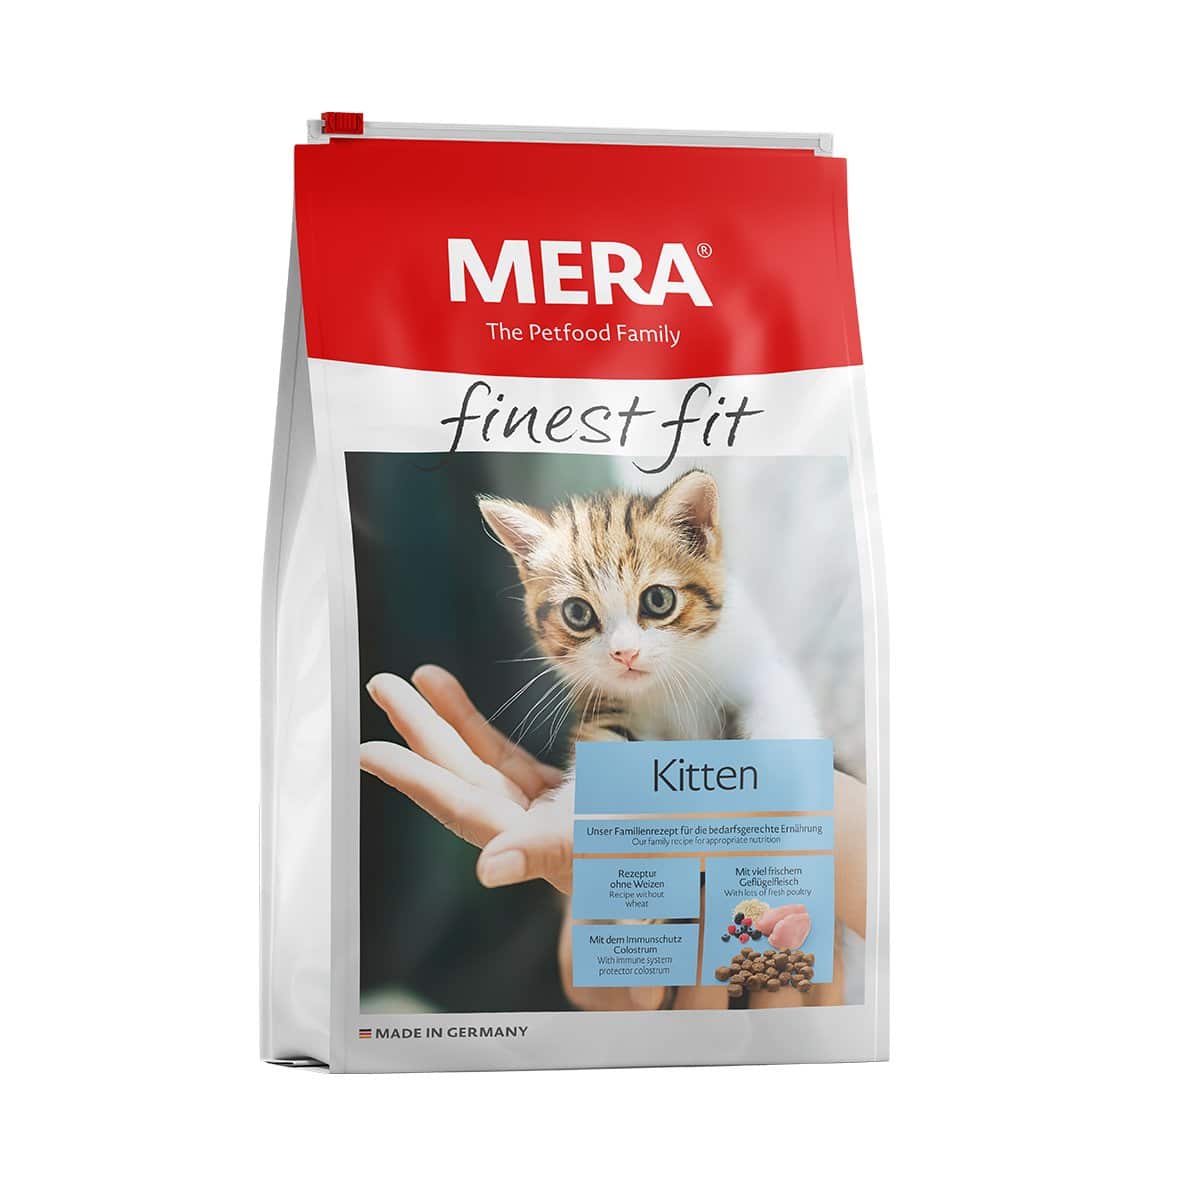 MERA finest fit Trockenfutter Kitten 4kg